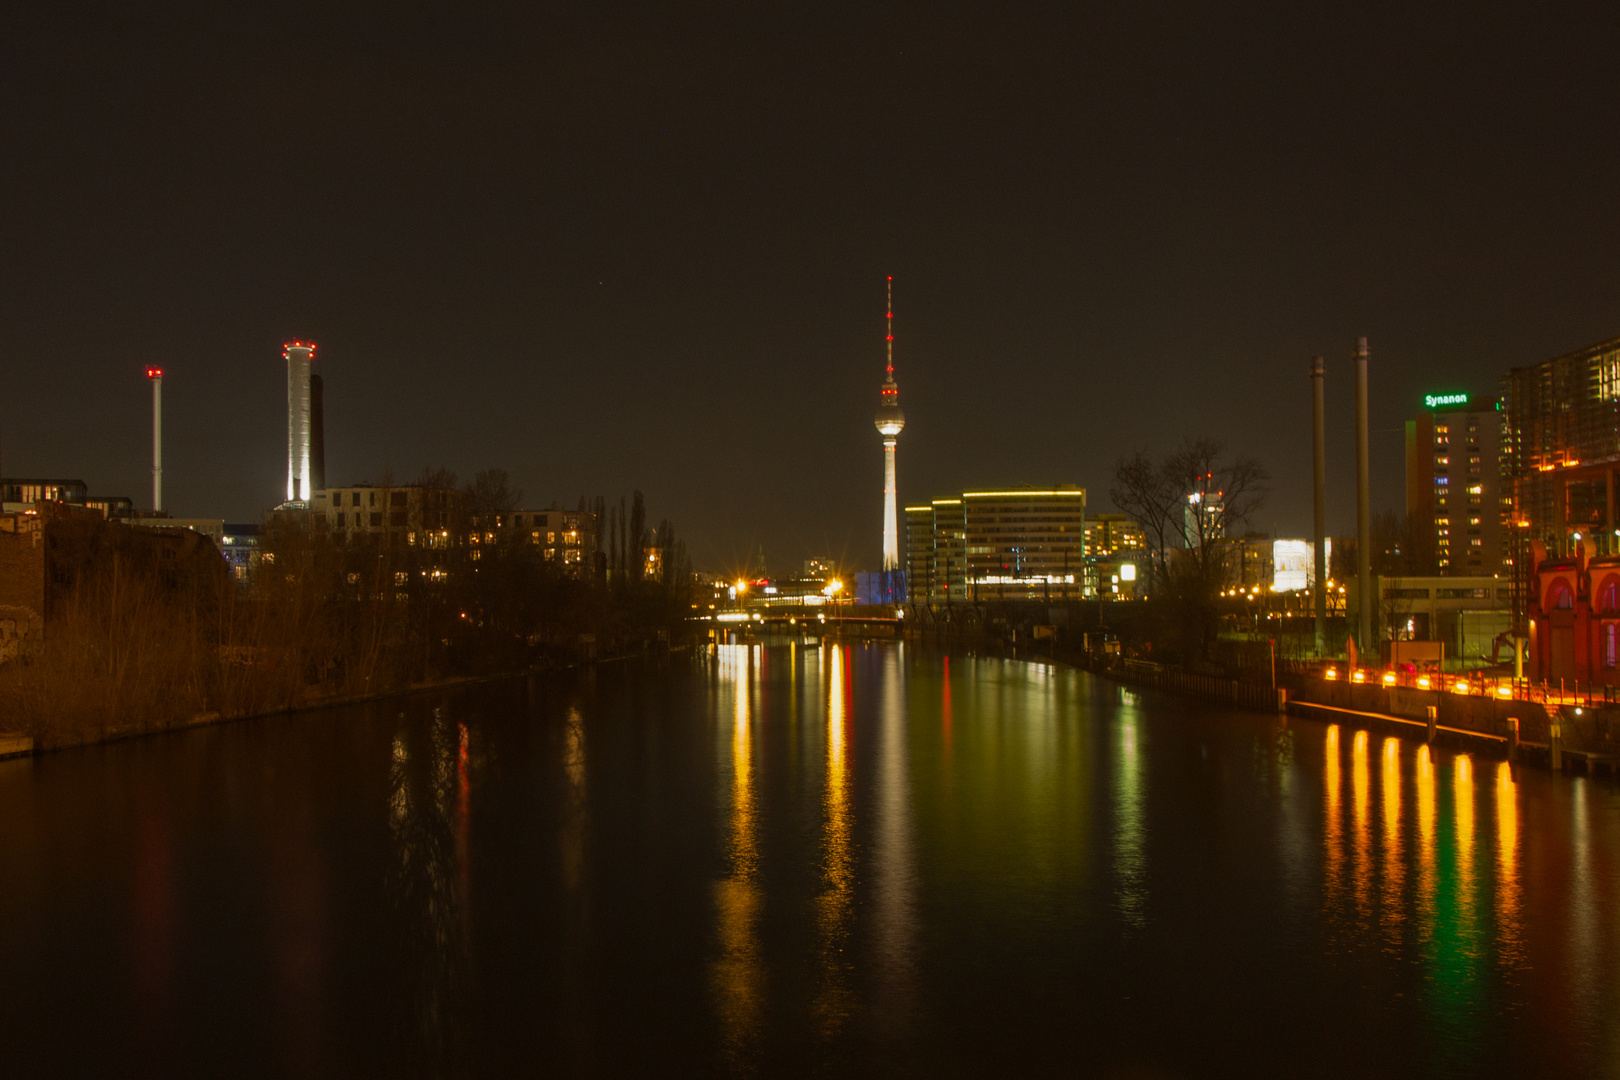 Berlin, ick liebe dir....